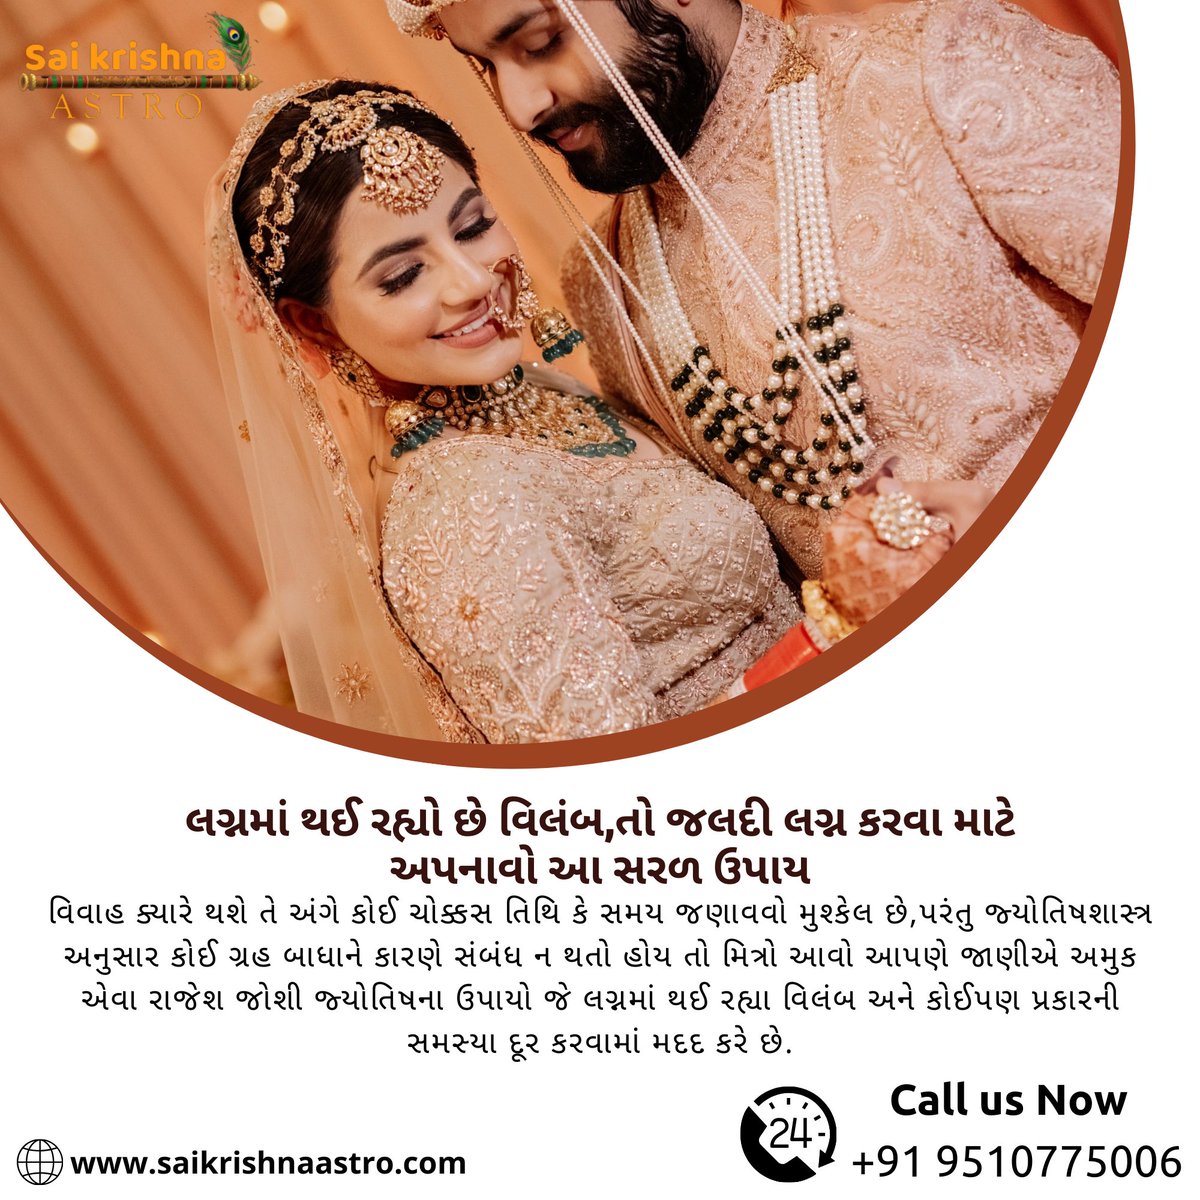 લગ્નમાં થઈ રહ્યો છે વિલંબ,તો જલદી લગ્ન કરવા માટે અપનાવો આ સરળ ઉપાય

📞 +919510775006

#Marriage #LoveMarriage #MarriageSolution #Astrologer #AstrologyGuidance #RajeshJoshiAstrologer #SaiKrishnaAstro #Ahmedabad #Gujarat